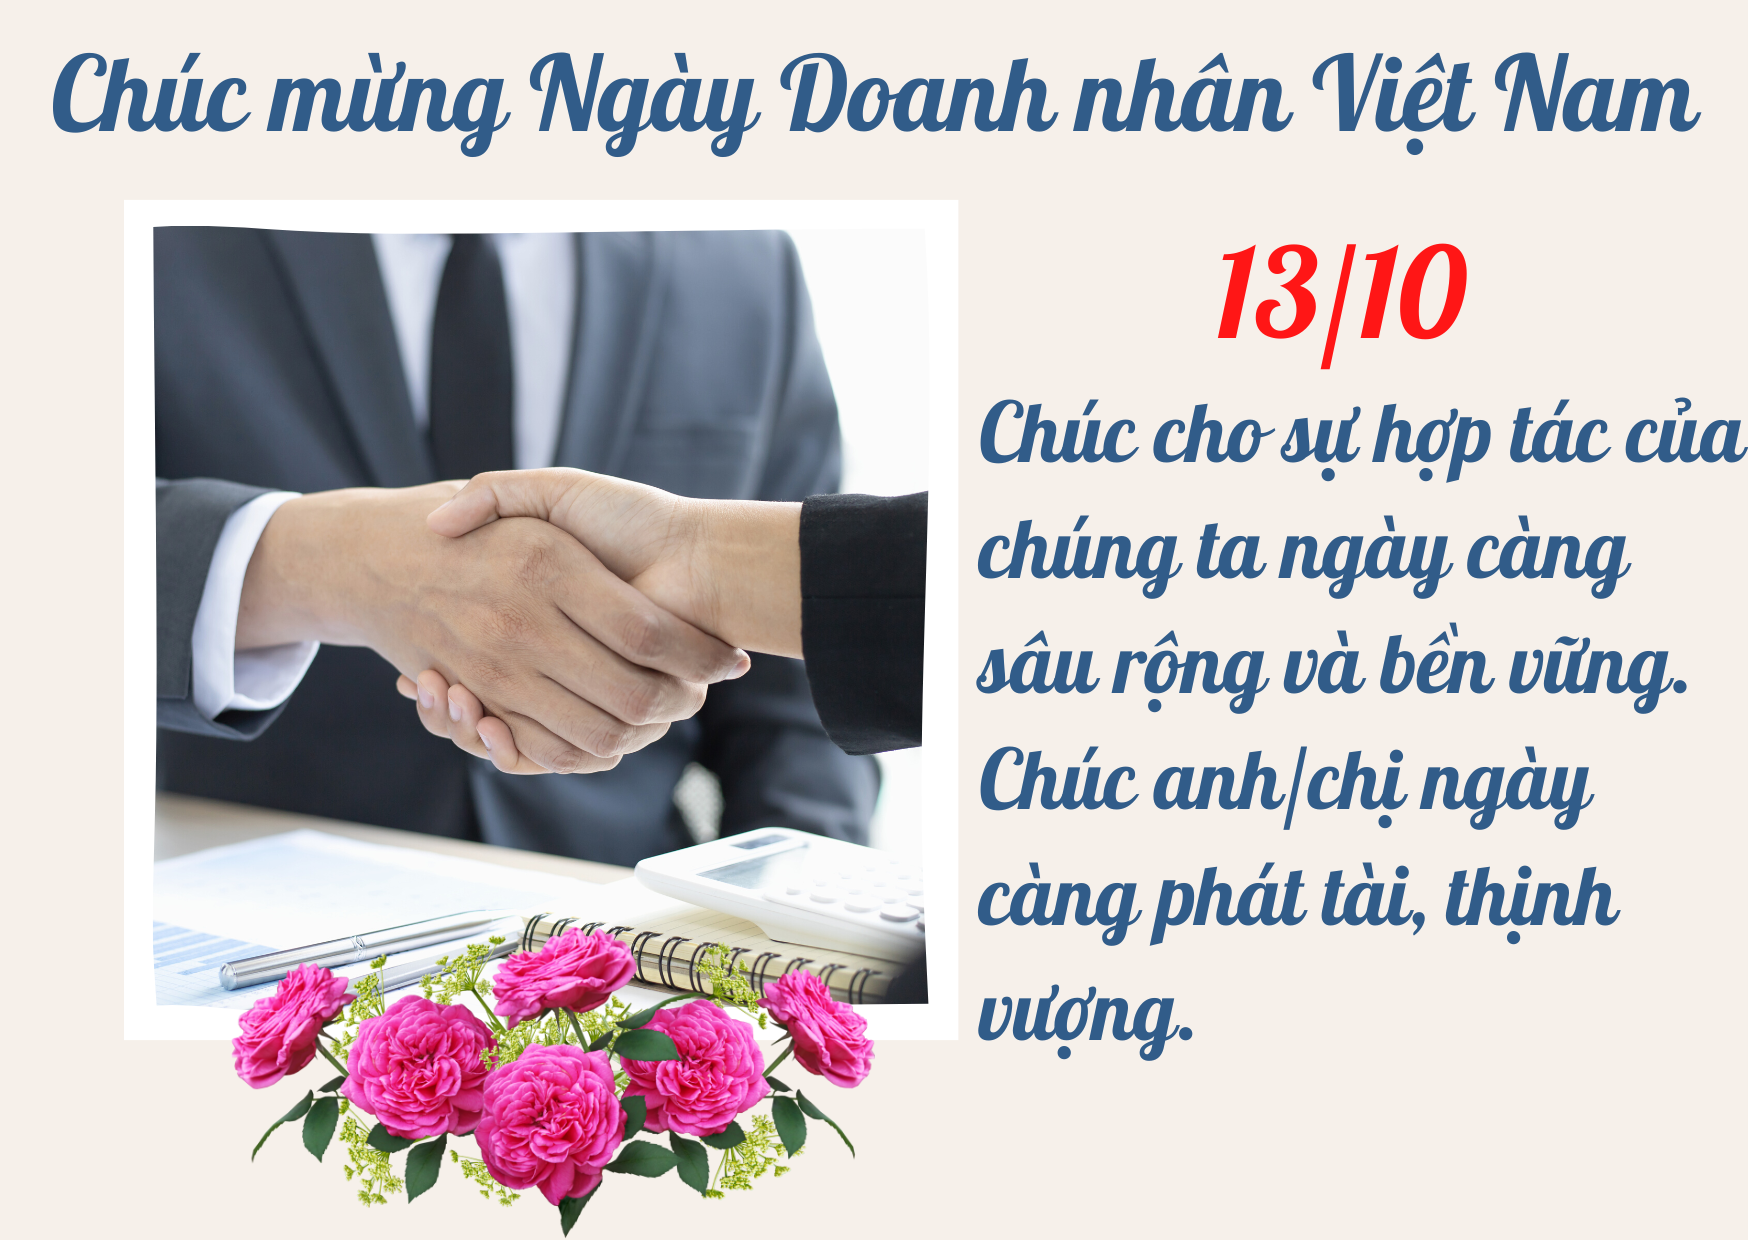 Hãy cùng chúc mừng năm 2024 với những thành tựu của các doanh nhân Việt Nam. Xem thêm về những thiệp chúc mừng đầy ý nghĩa để gửi đến những người bạn, đồng nghiệp, hay những người có ảnh hưởng lớn đến sự nghiệp của bạn. Hãy cùng nhau chia vui và đón nhận những thử thách mới trong tương lai.